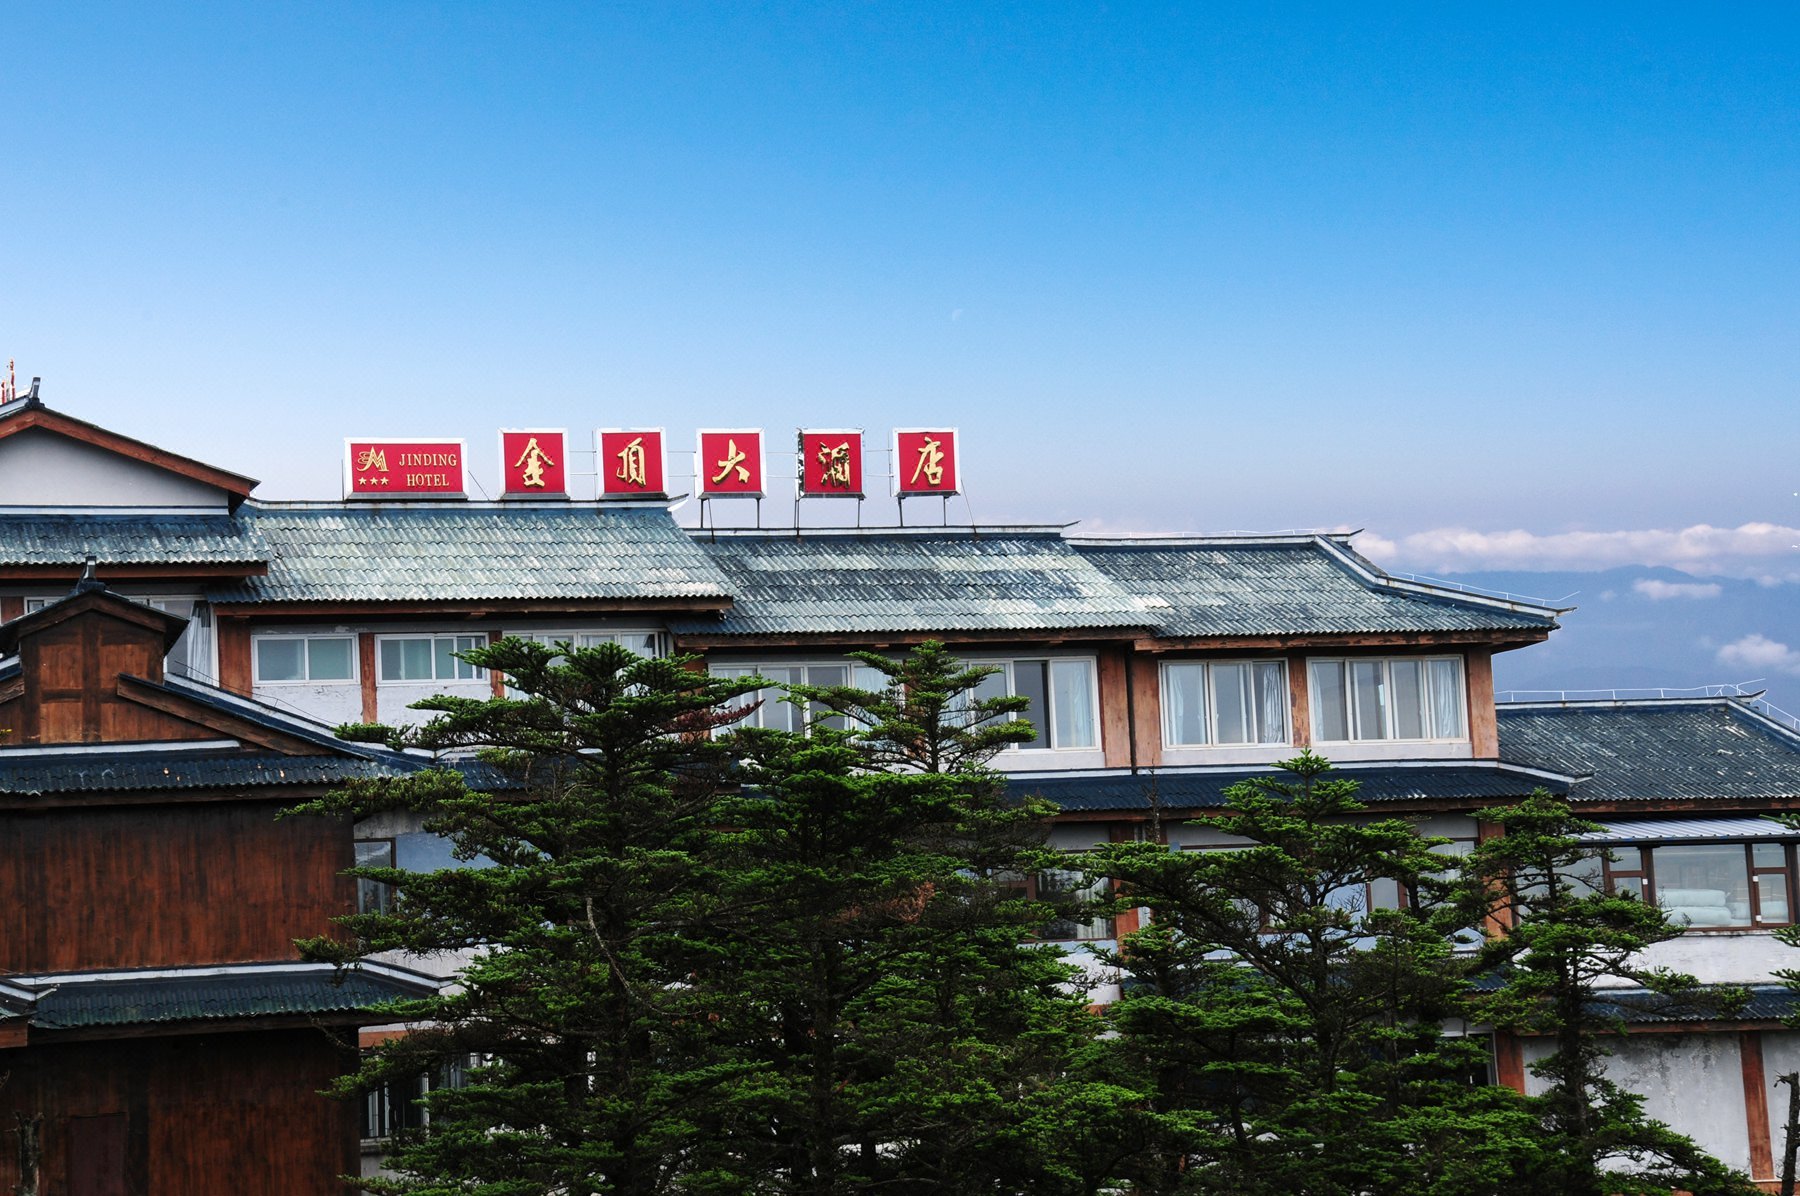 China emei mountain hotel